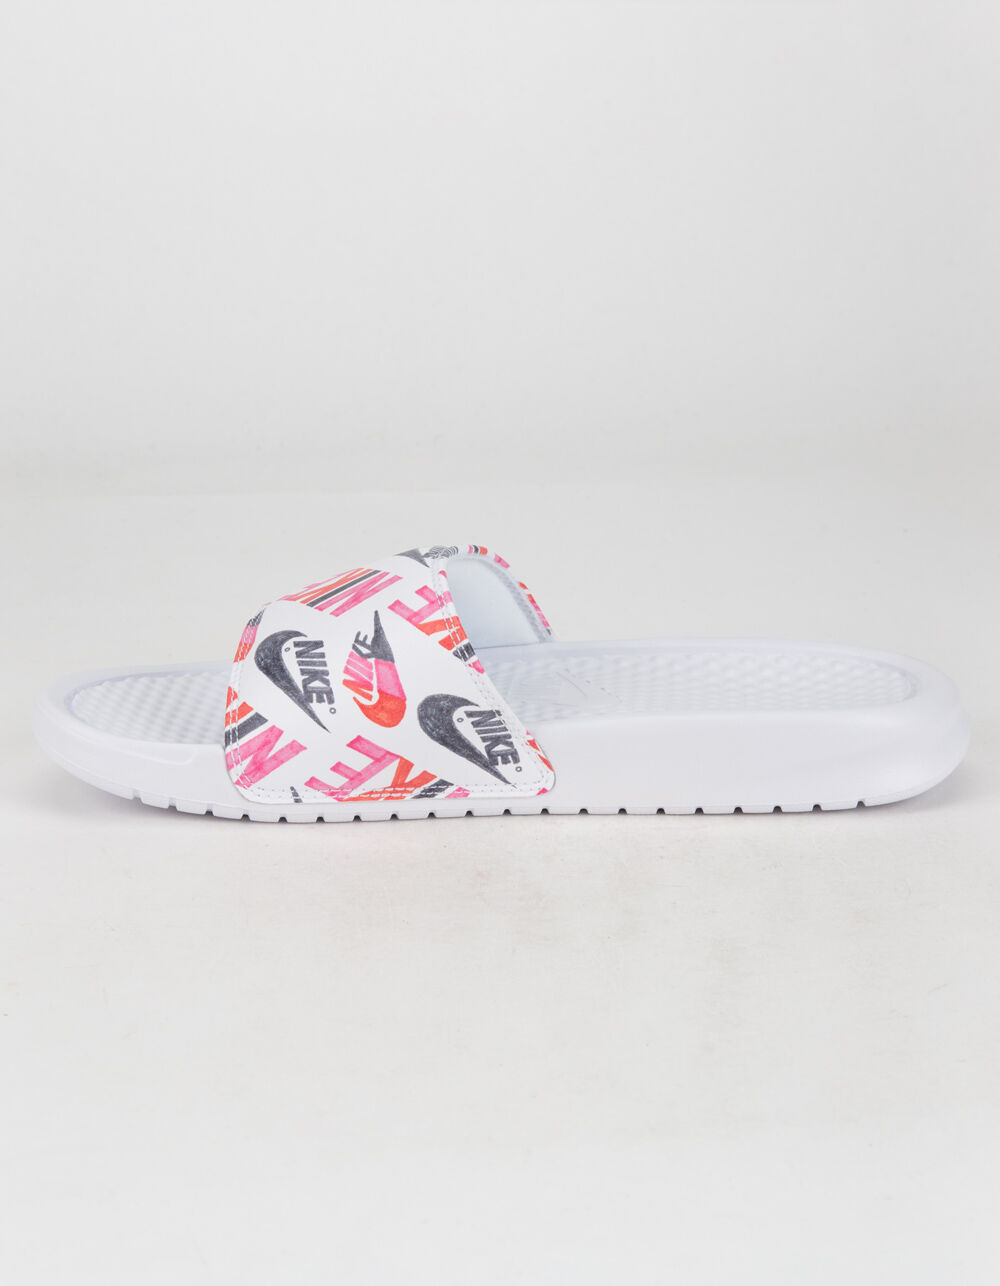 NIKE Benassi JDI Print Womens Slide Sandals - WHITE COMBO | Tillys